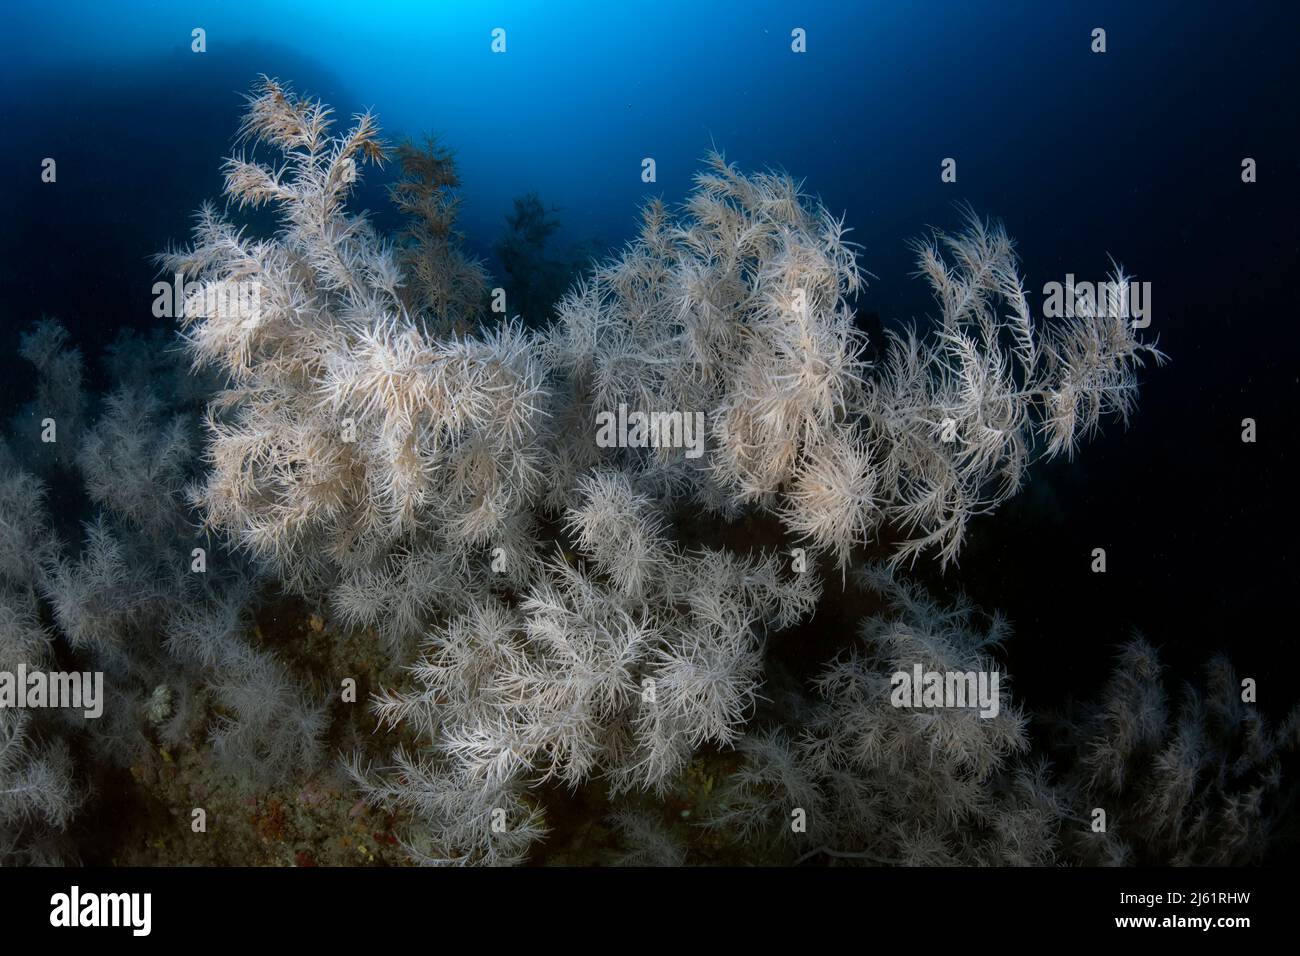 Un mitico punto di immersione profonda nel mediterraneo, lo shoal Atlantide, caratterizzato dalla presenza di una immensa colonia di corallo nero (Antipathiella subpin Foto Stock